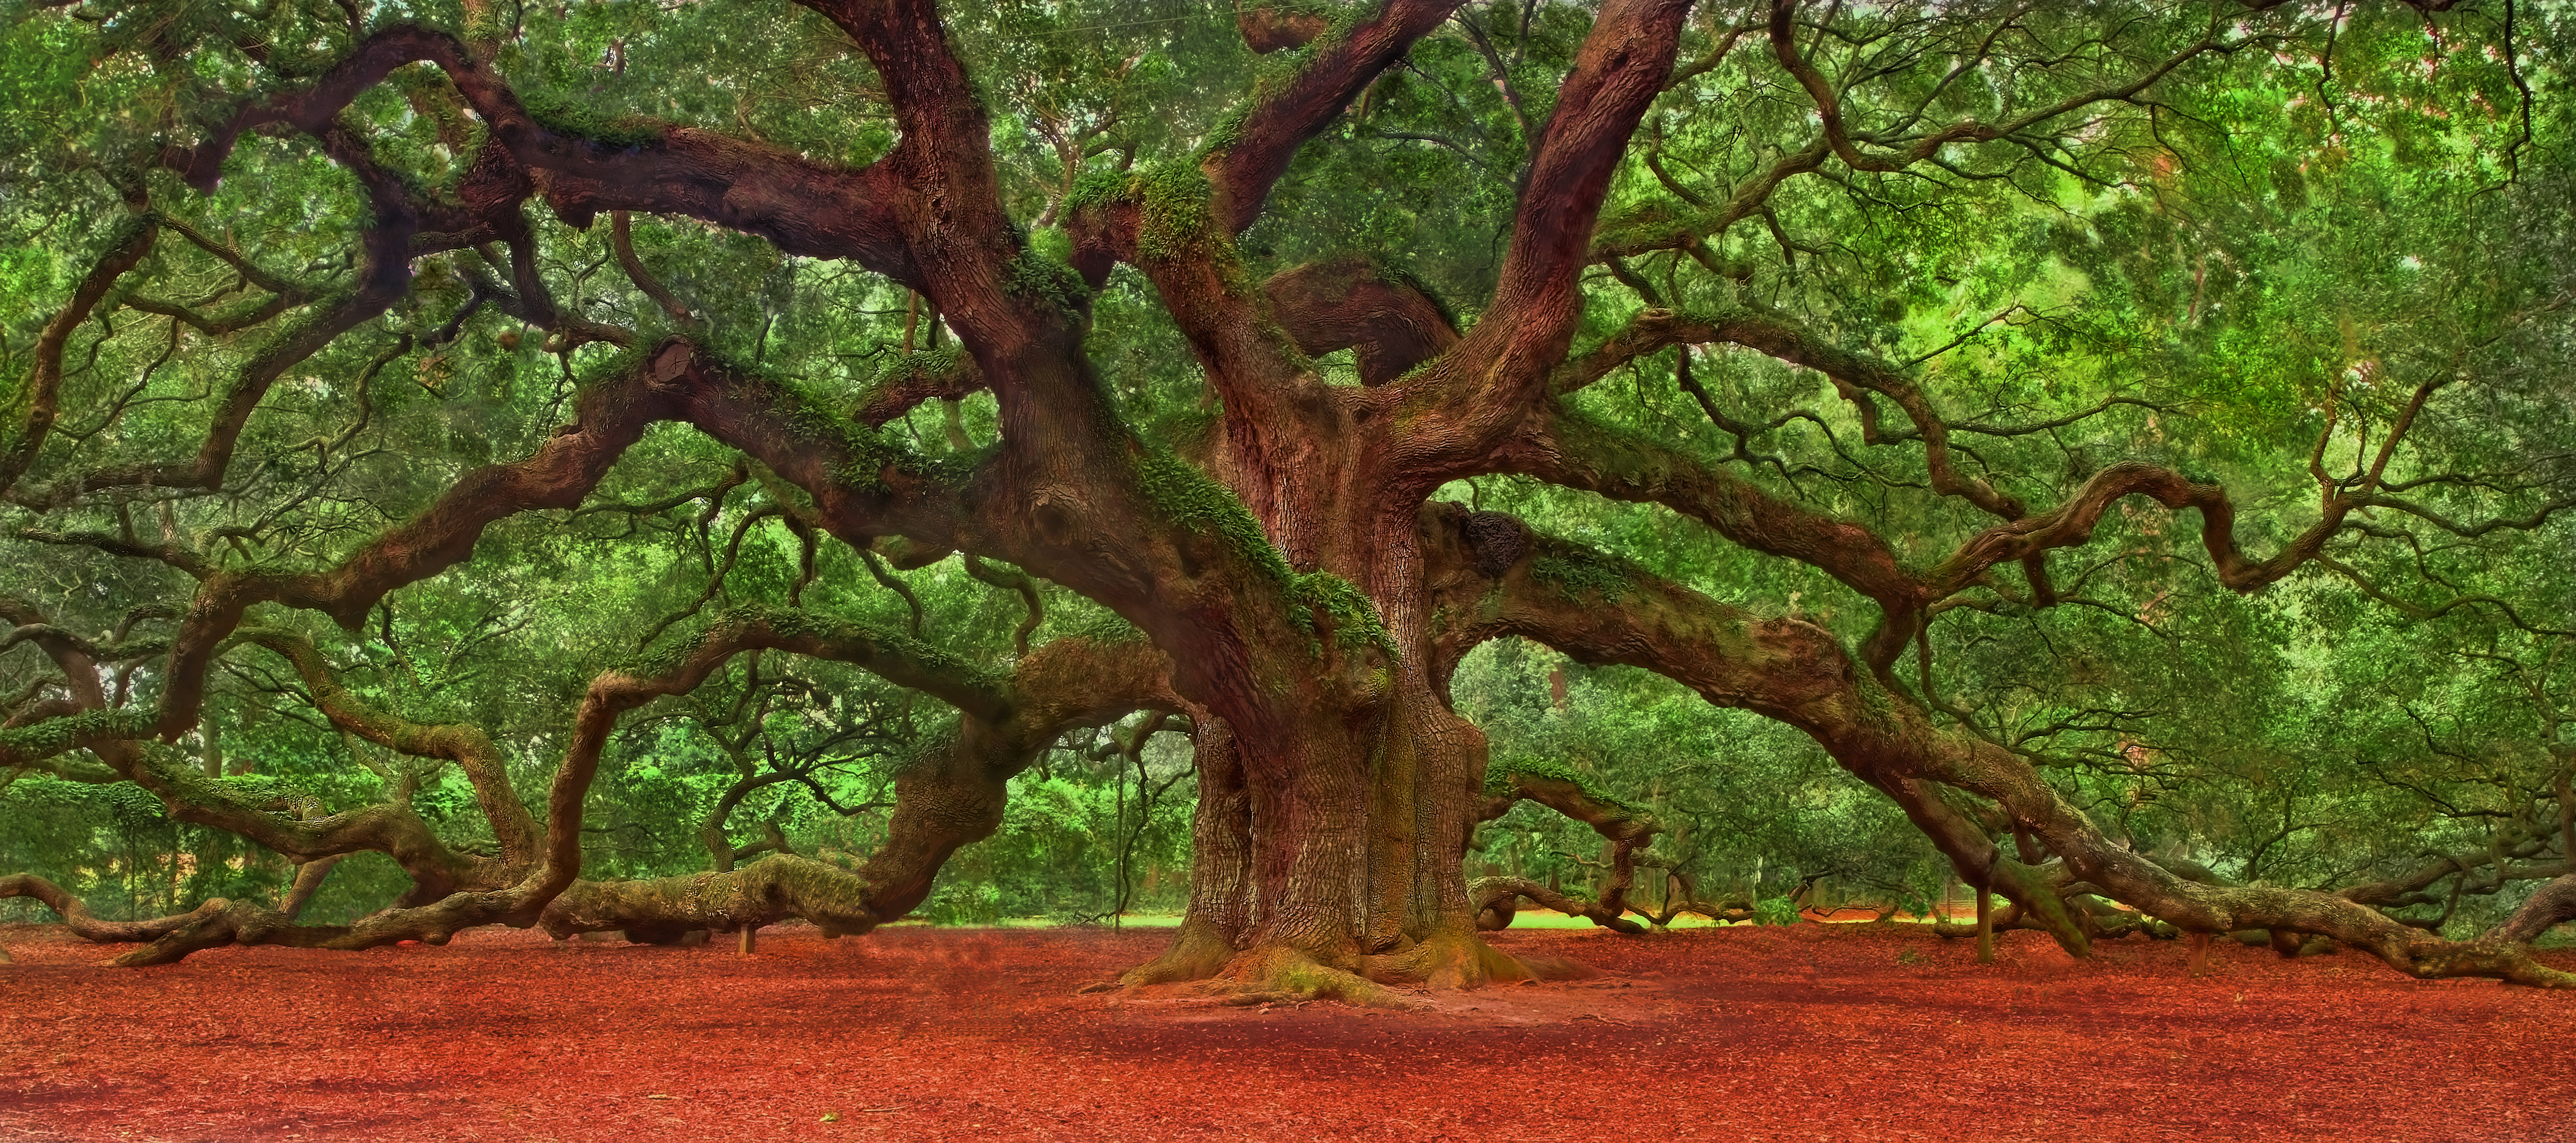 Angel Oak Tree Backgrounds on Wallpapers Vista